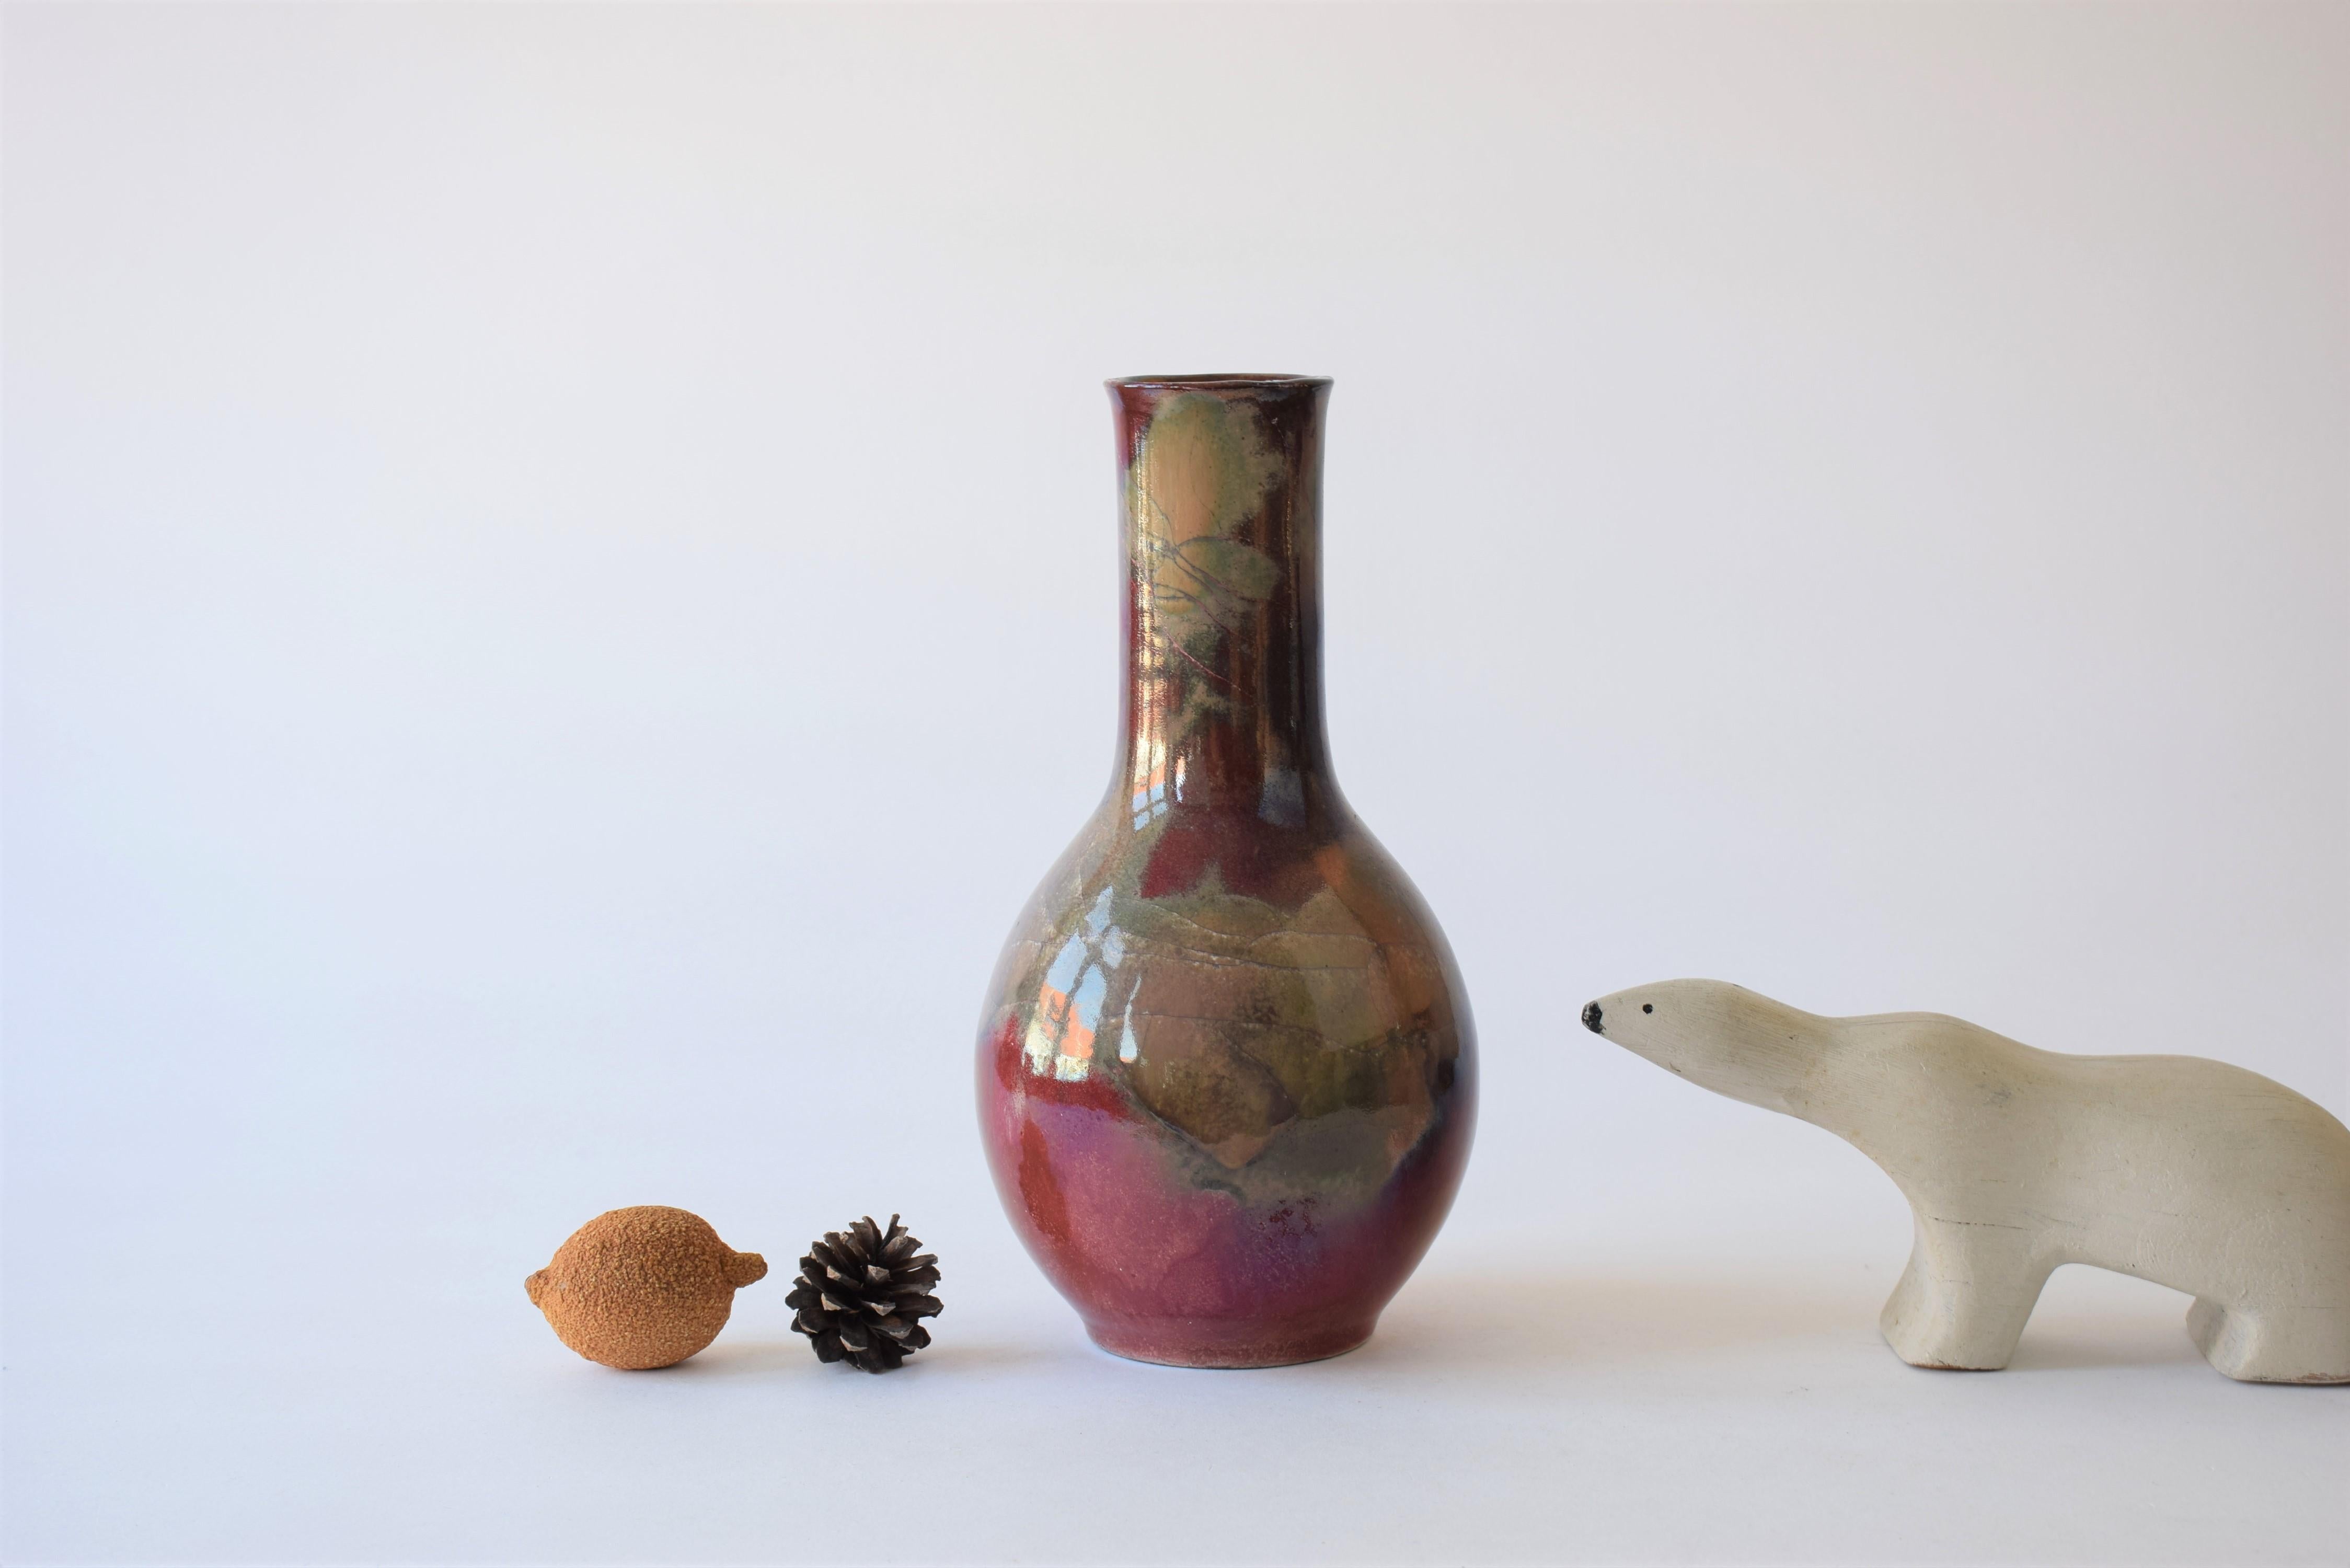 Große Vase aus der dänischen Keramikwerkstatt Herman August Kähler (HAK). Es hat eine atemberaubende Glasur mit viel rotem Schimmer und gräulichen Elementen. Aus den verschiedenen Blickwinkeln sieht es sehr unterschiedlich aus. Sie ist aus Steingut